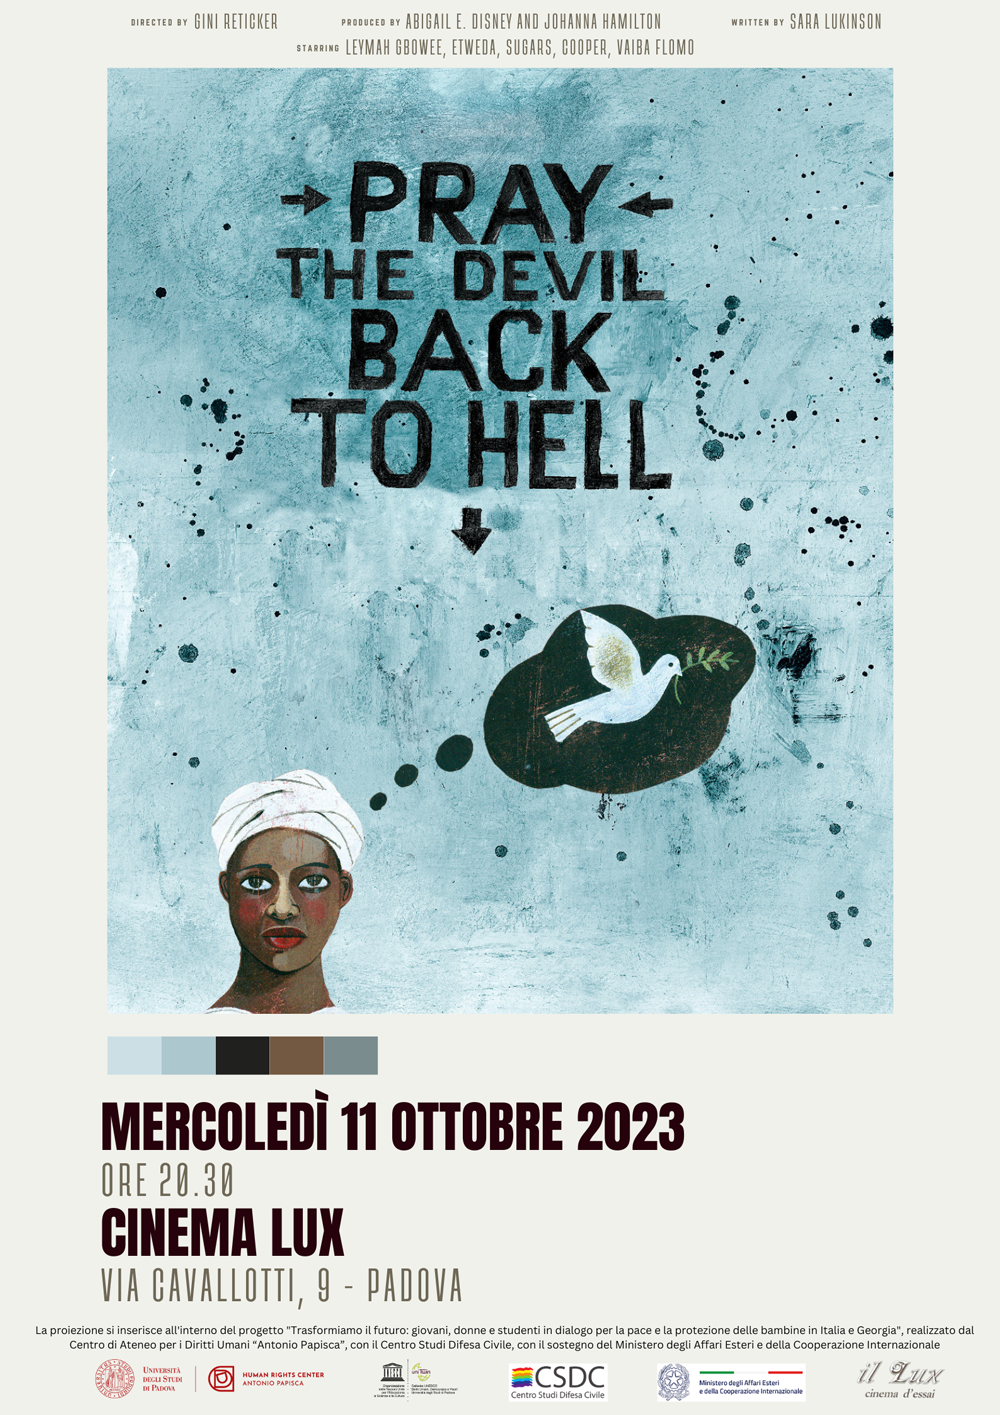 Locandina del film Pray the Devil Back to Hell. Disegno di una donna africana su uno sfondo blu che pensa ad una colomba, simbolo di pace